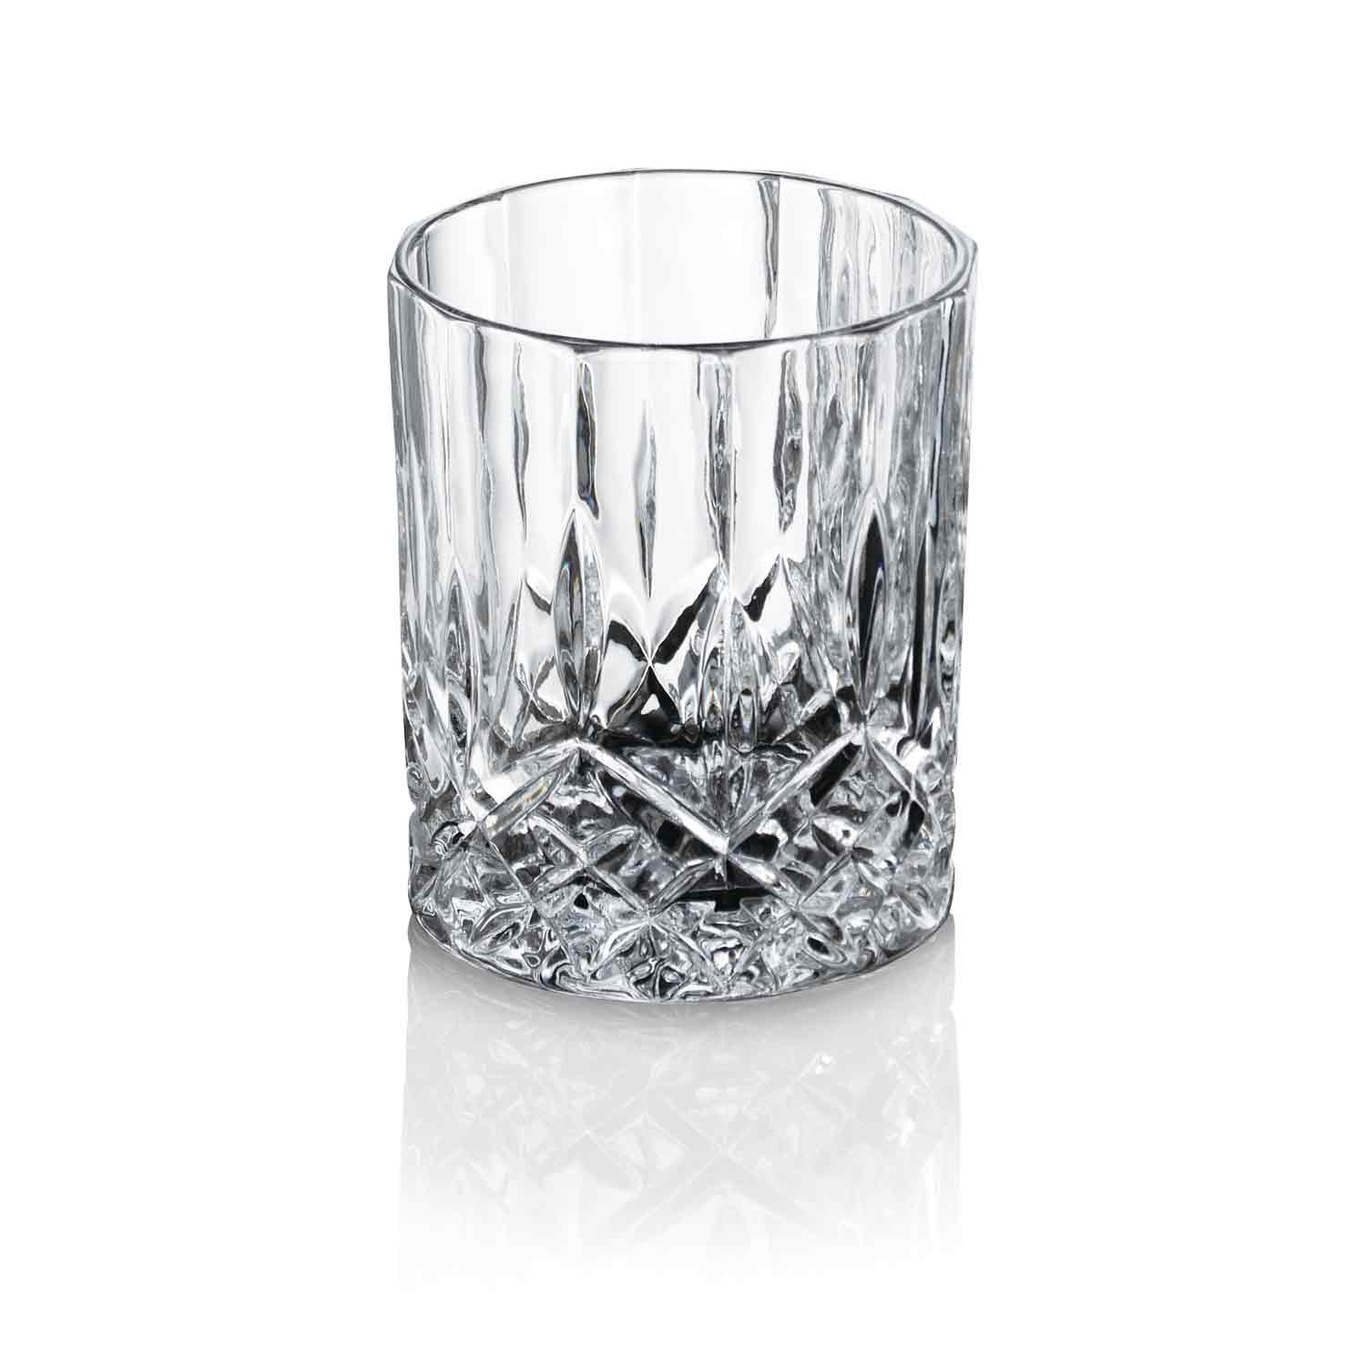 Harvey Cocktailglas 24 cl 4 stk, Doorzichtig